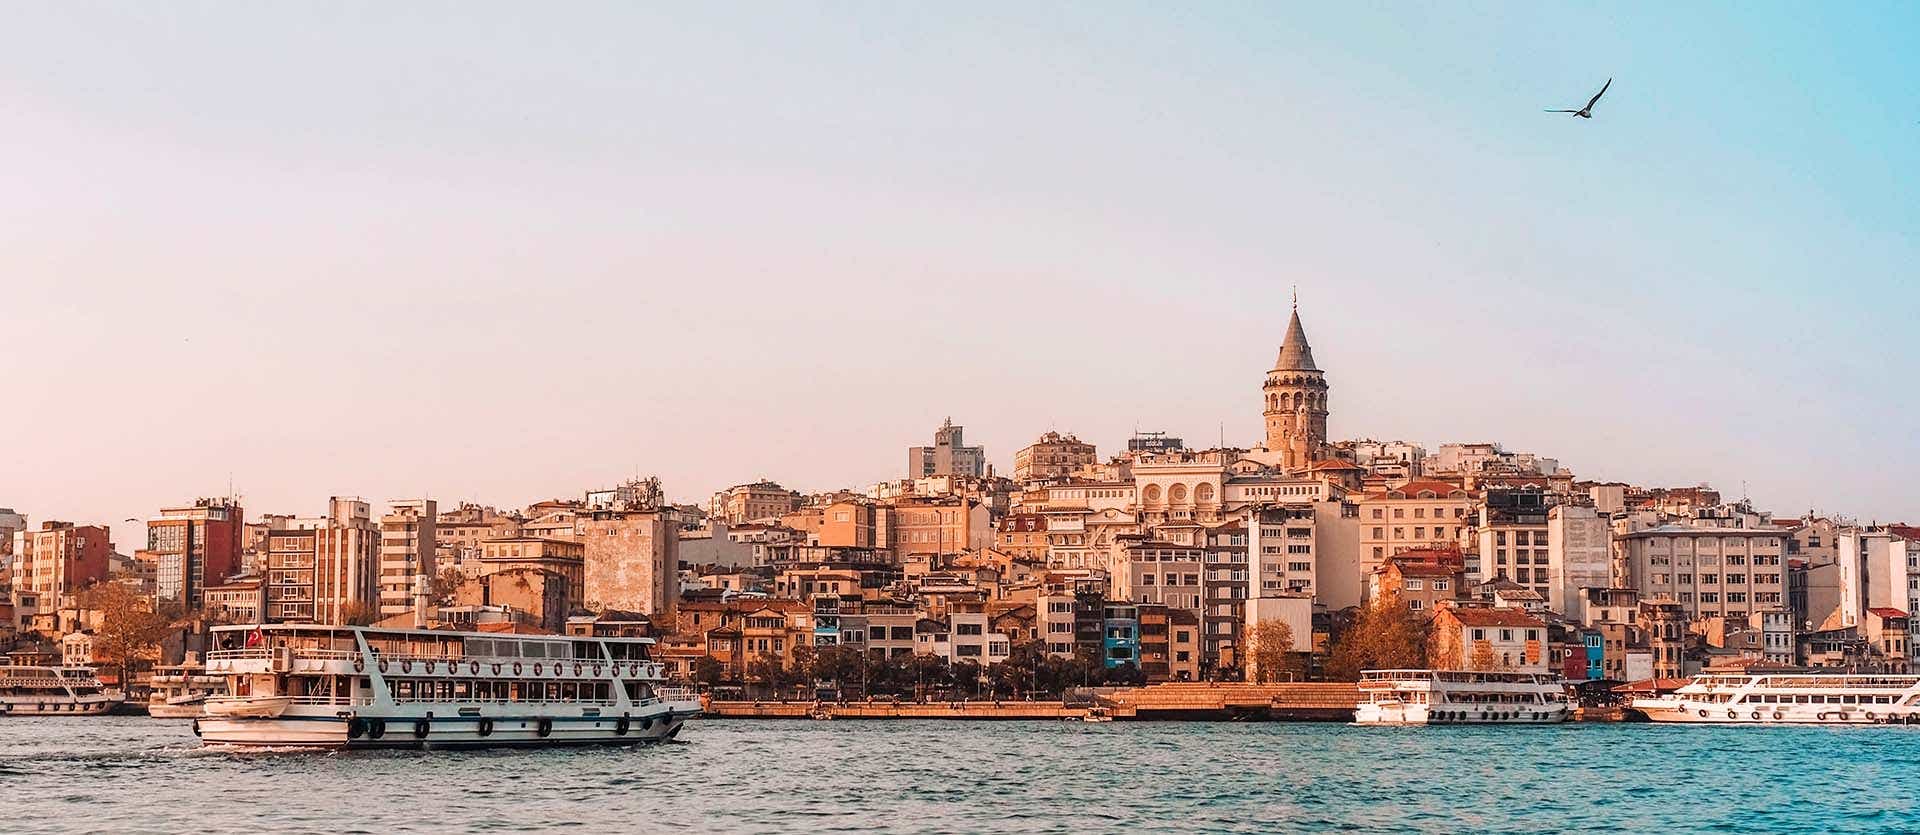 Vistas de Estambul desde el Bósforo <span class="iconos separador"></span> Istanbul <span class="iconos separador"></span> Turquía